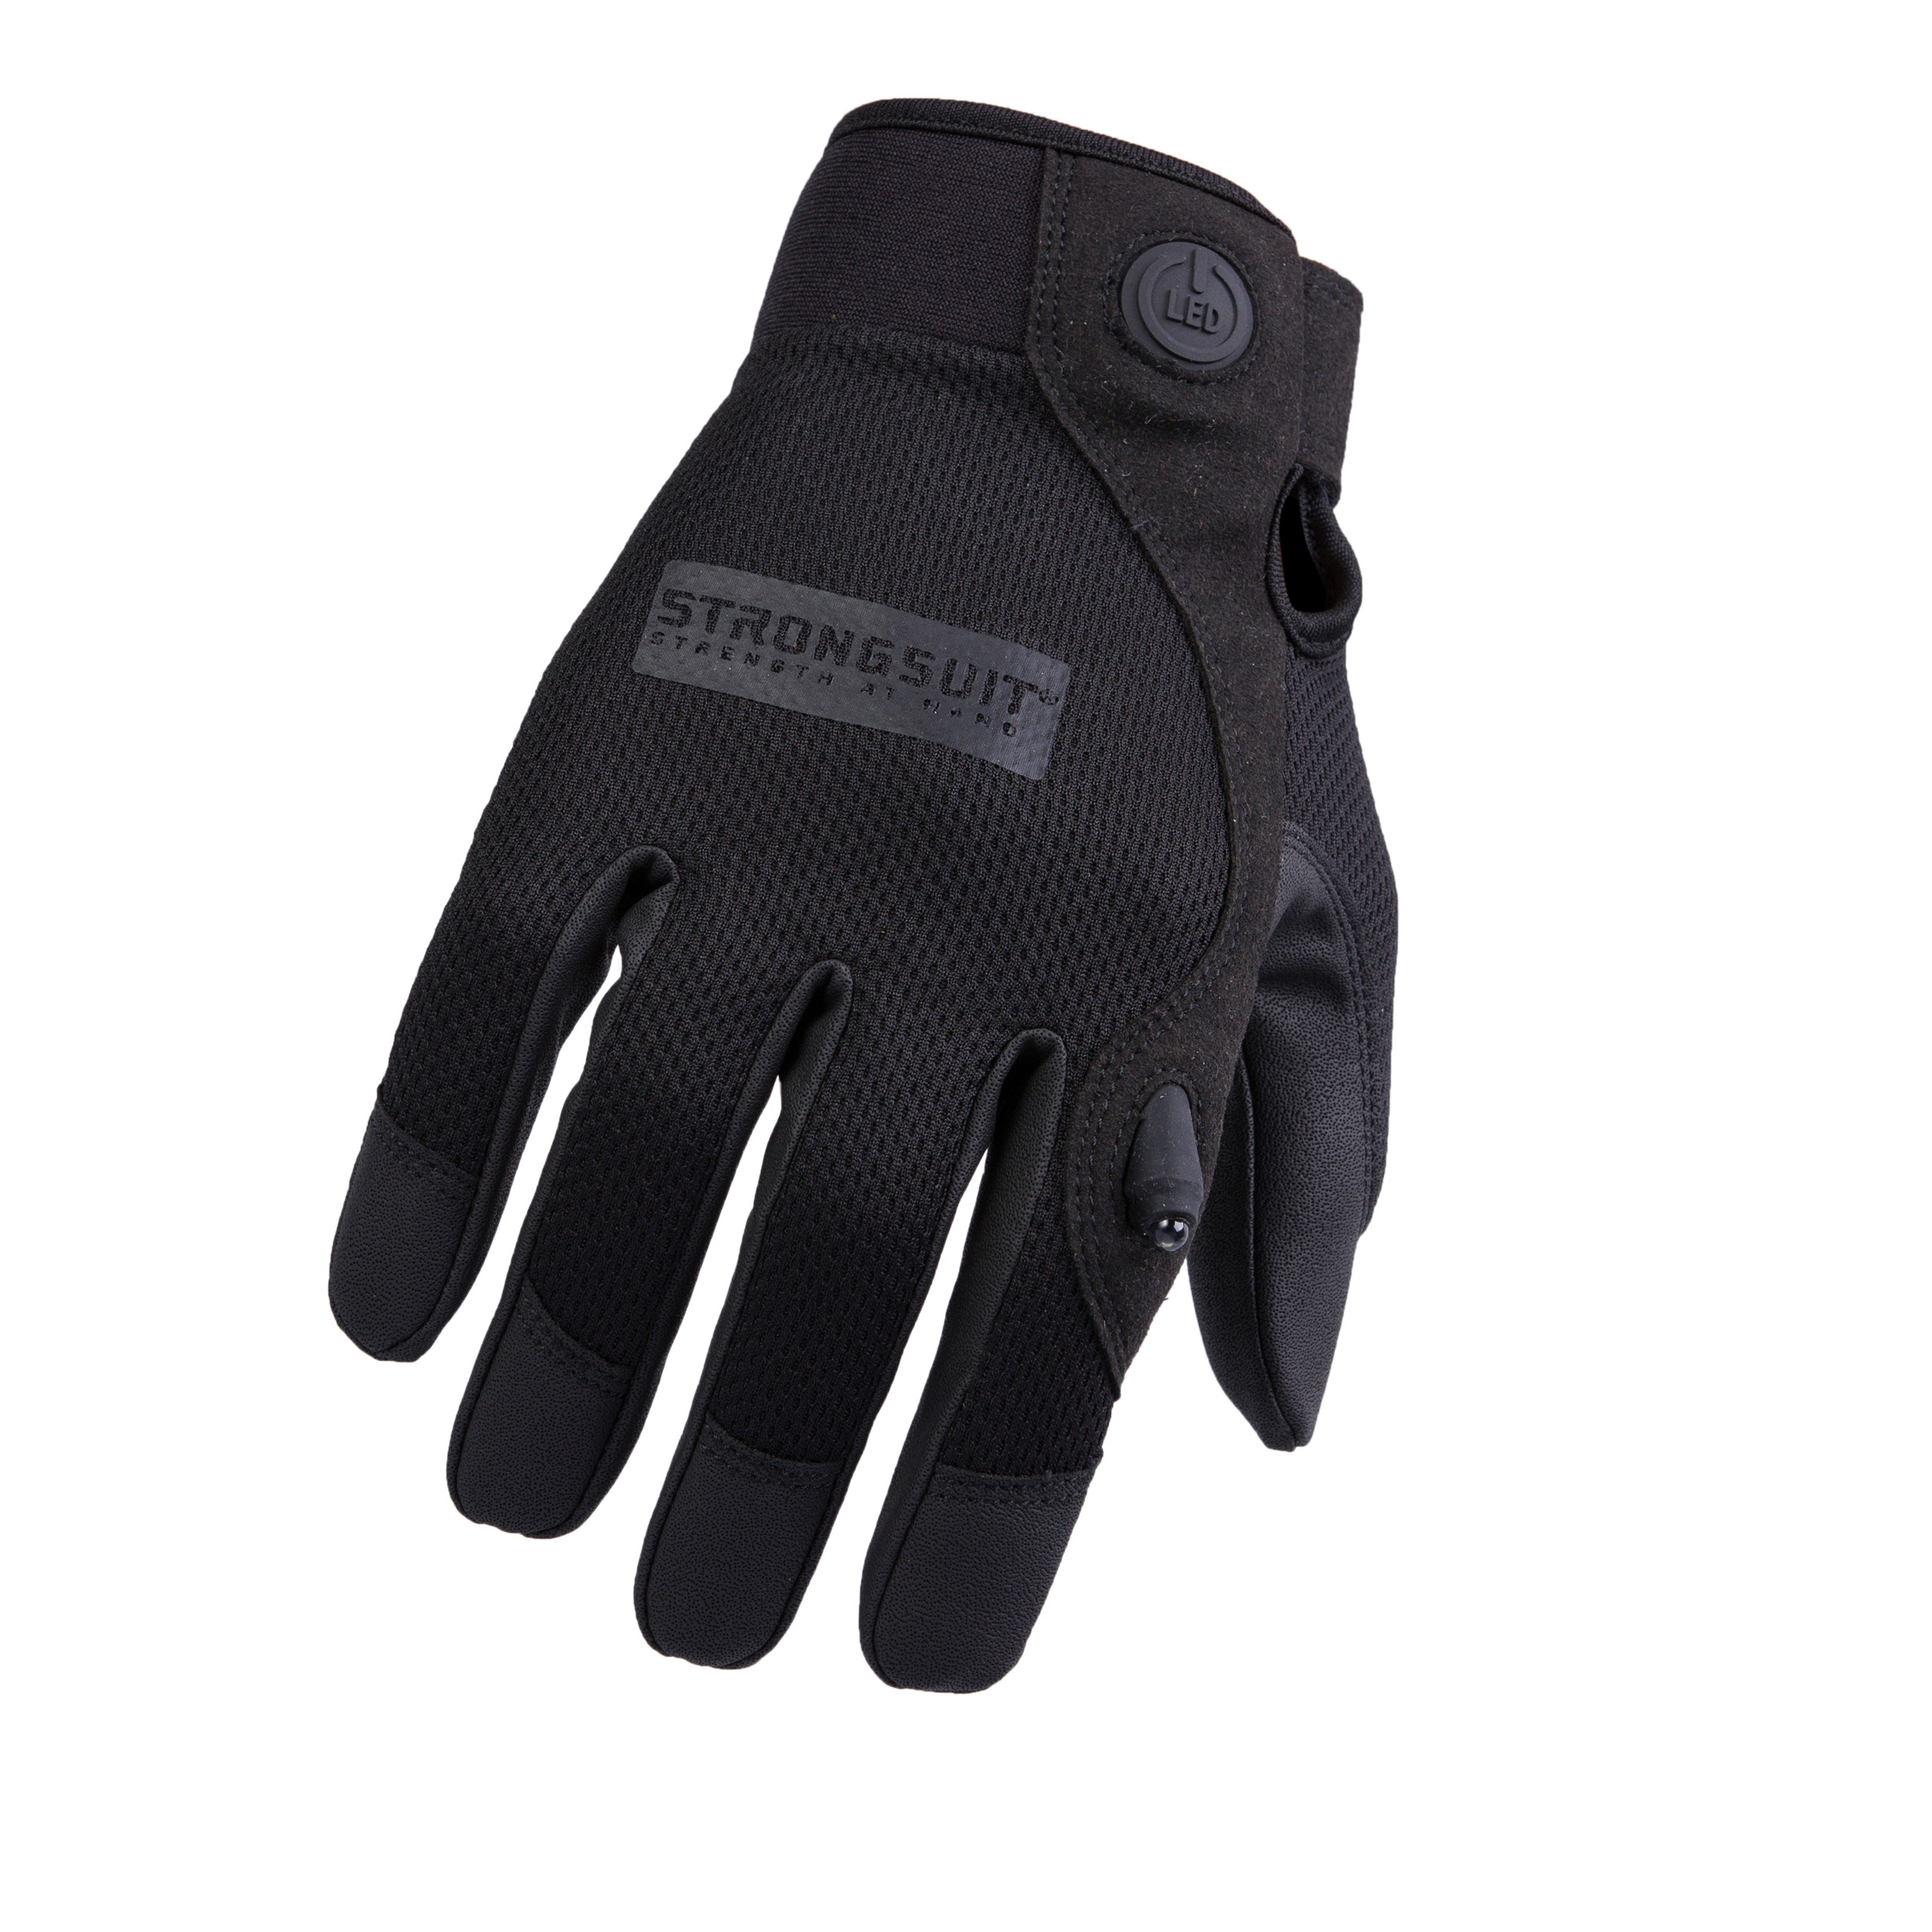 Second Skin Gloves Led Black Xxl